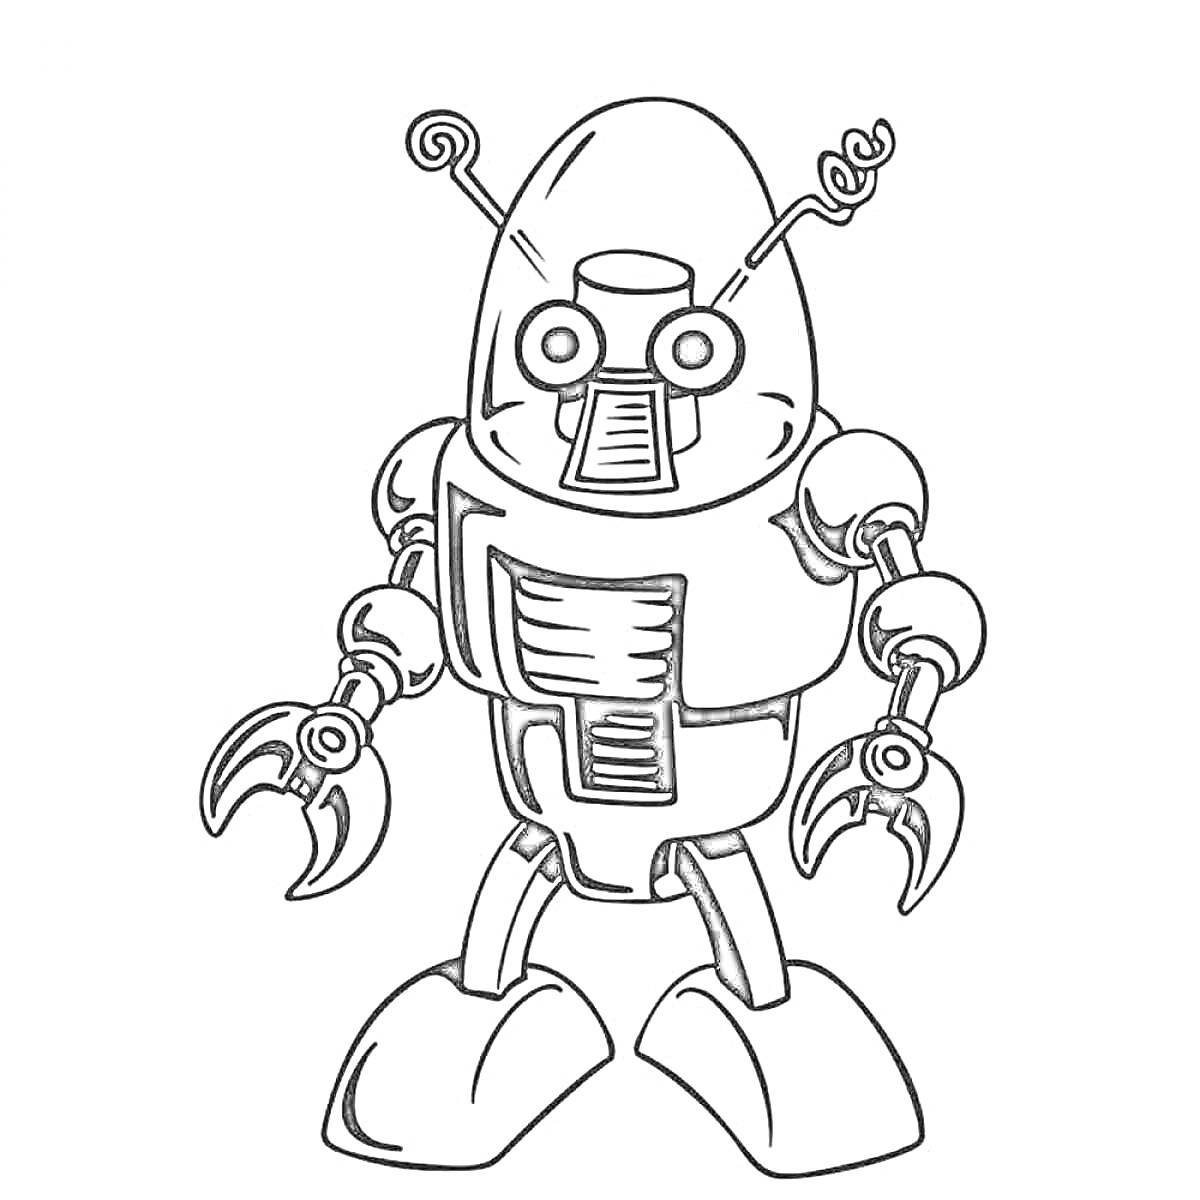 Робот с антеннами, гусеницы вместо ног, руки с клешнями